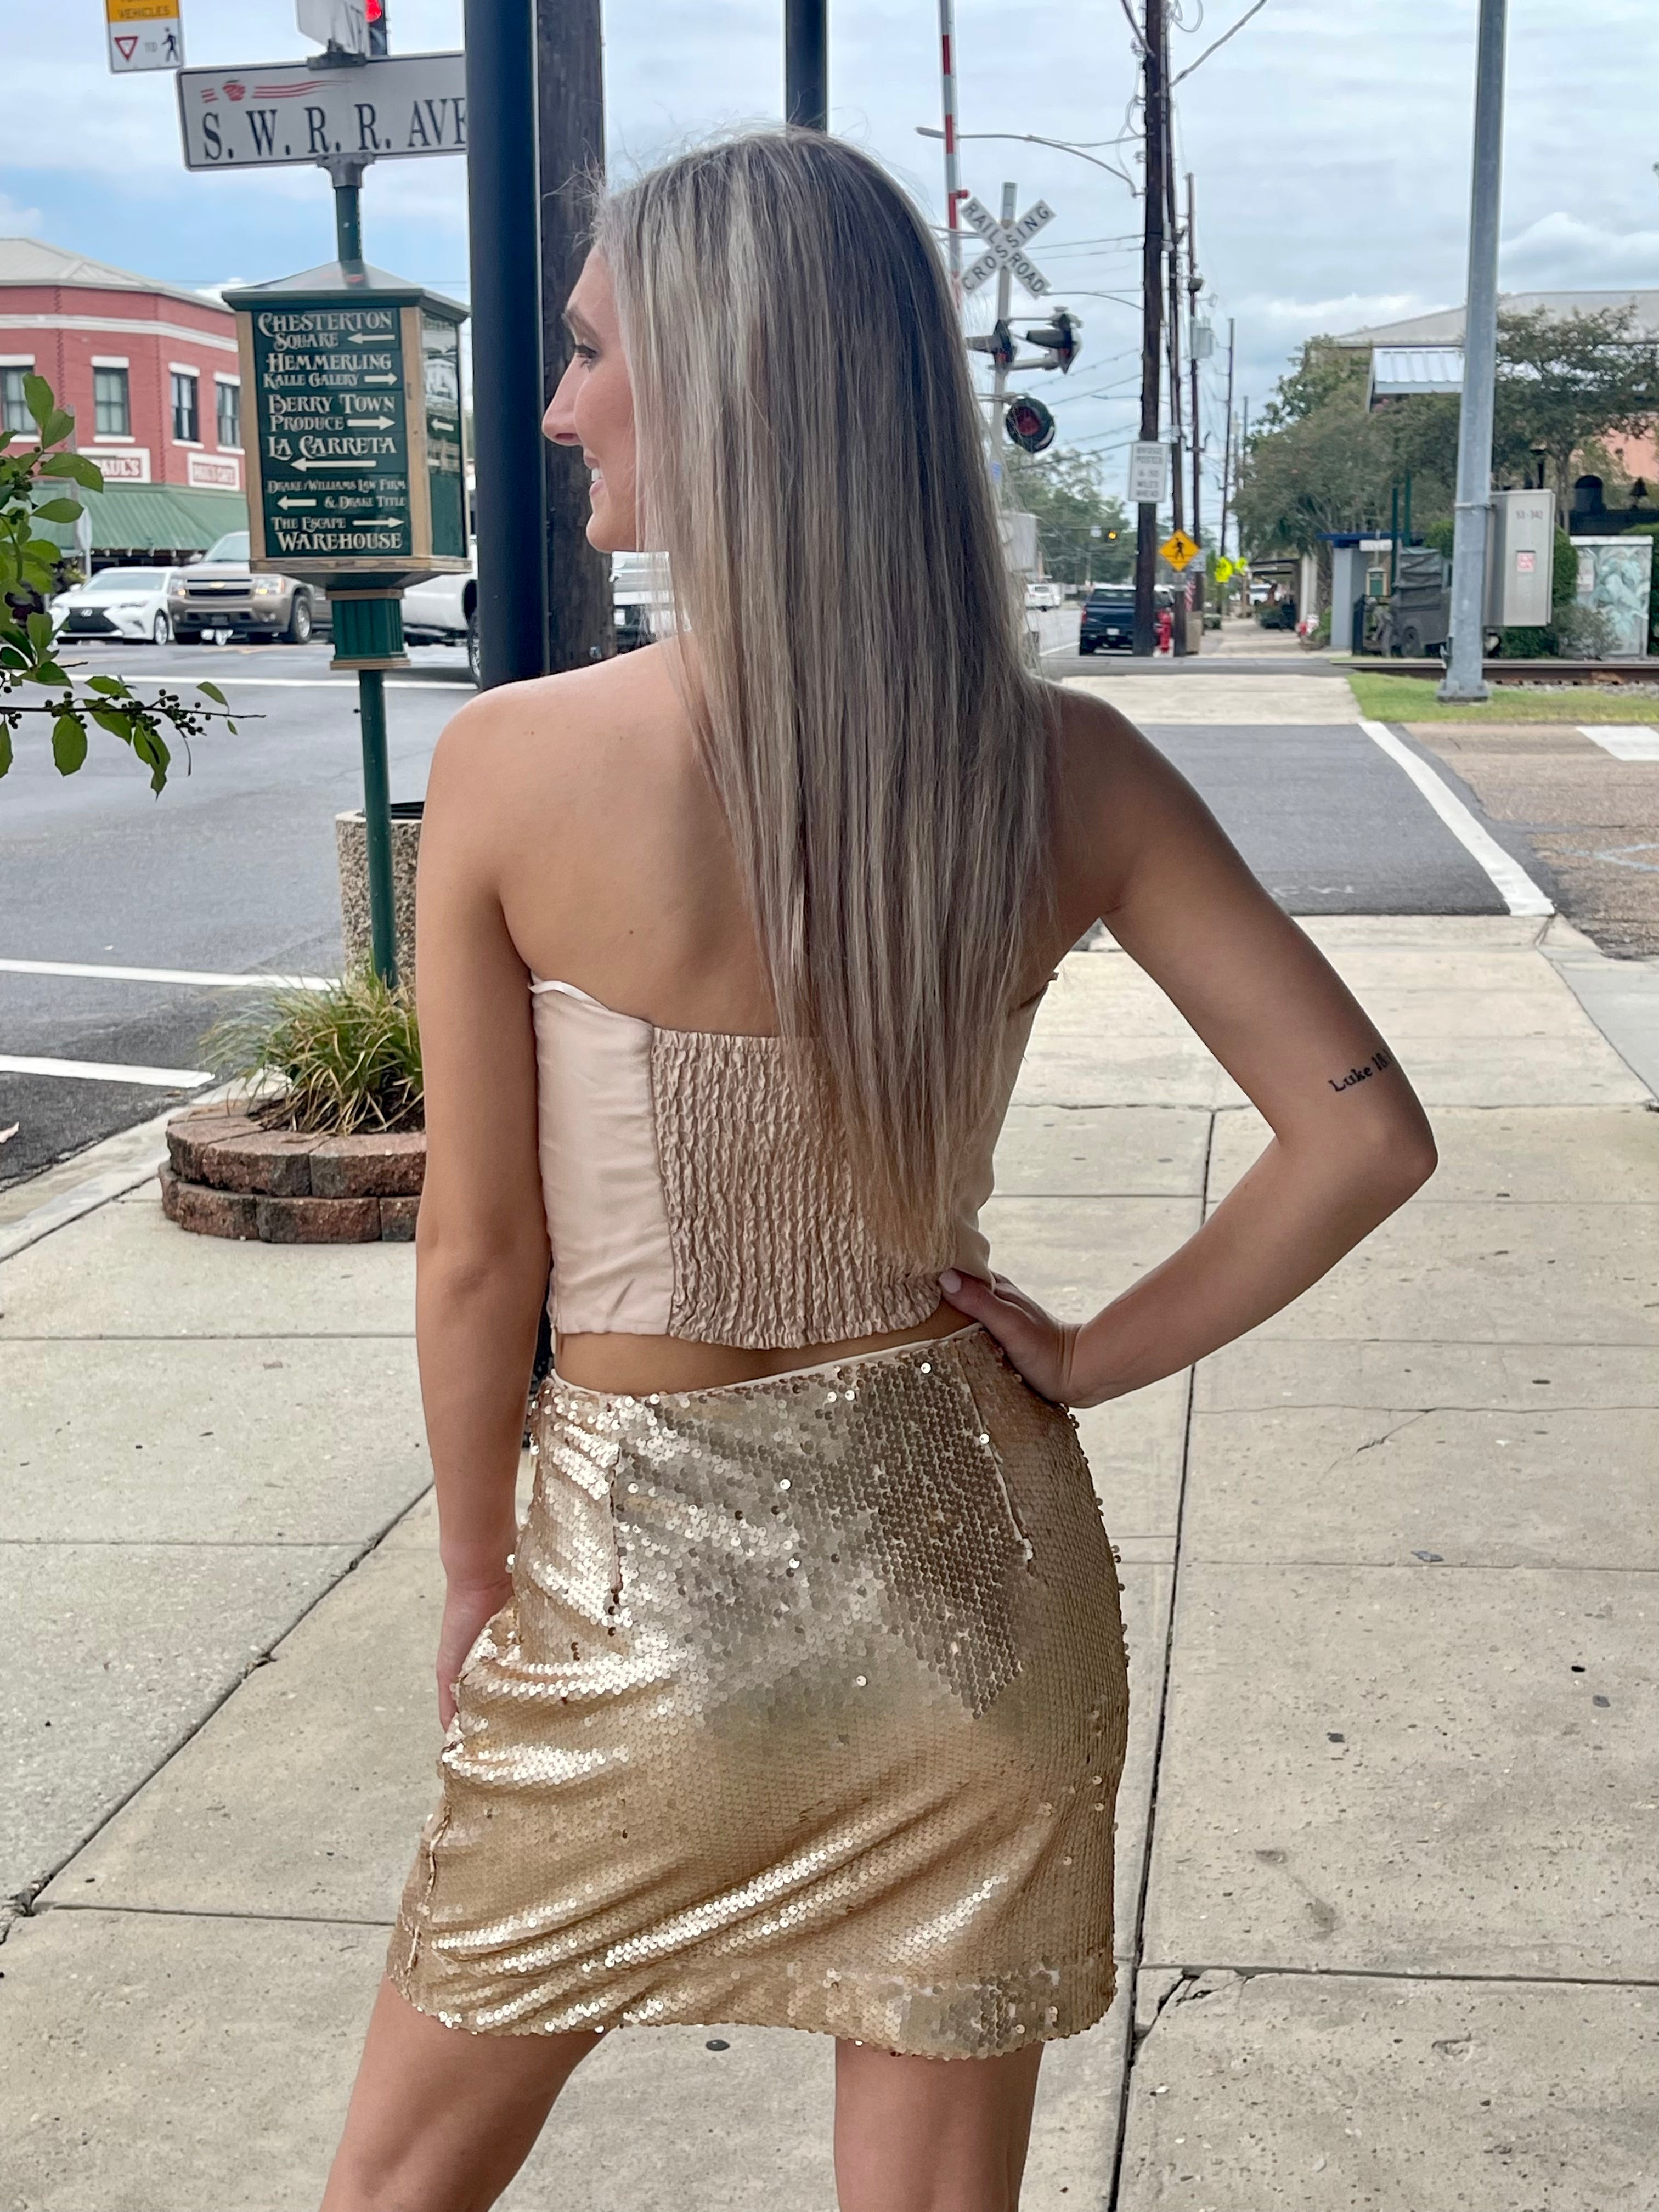 Rose Gold Sequin Skirt